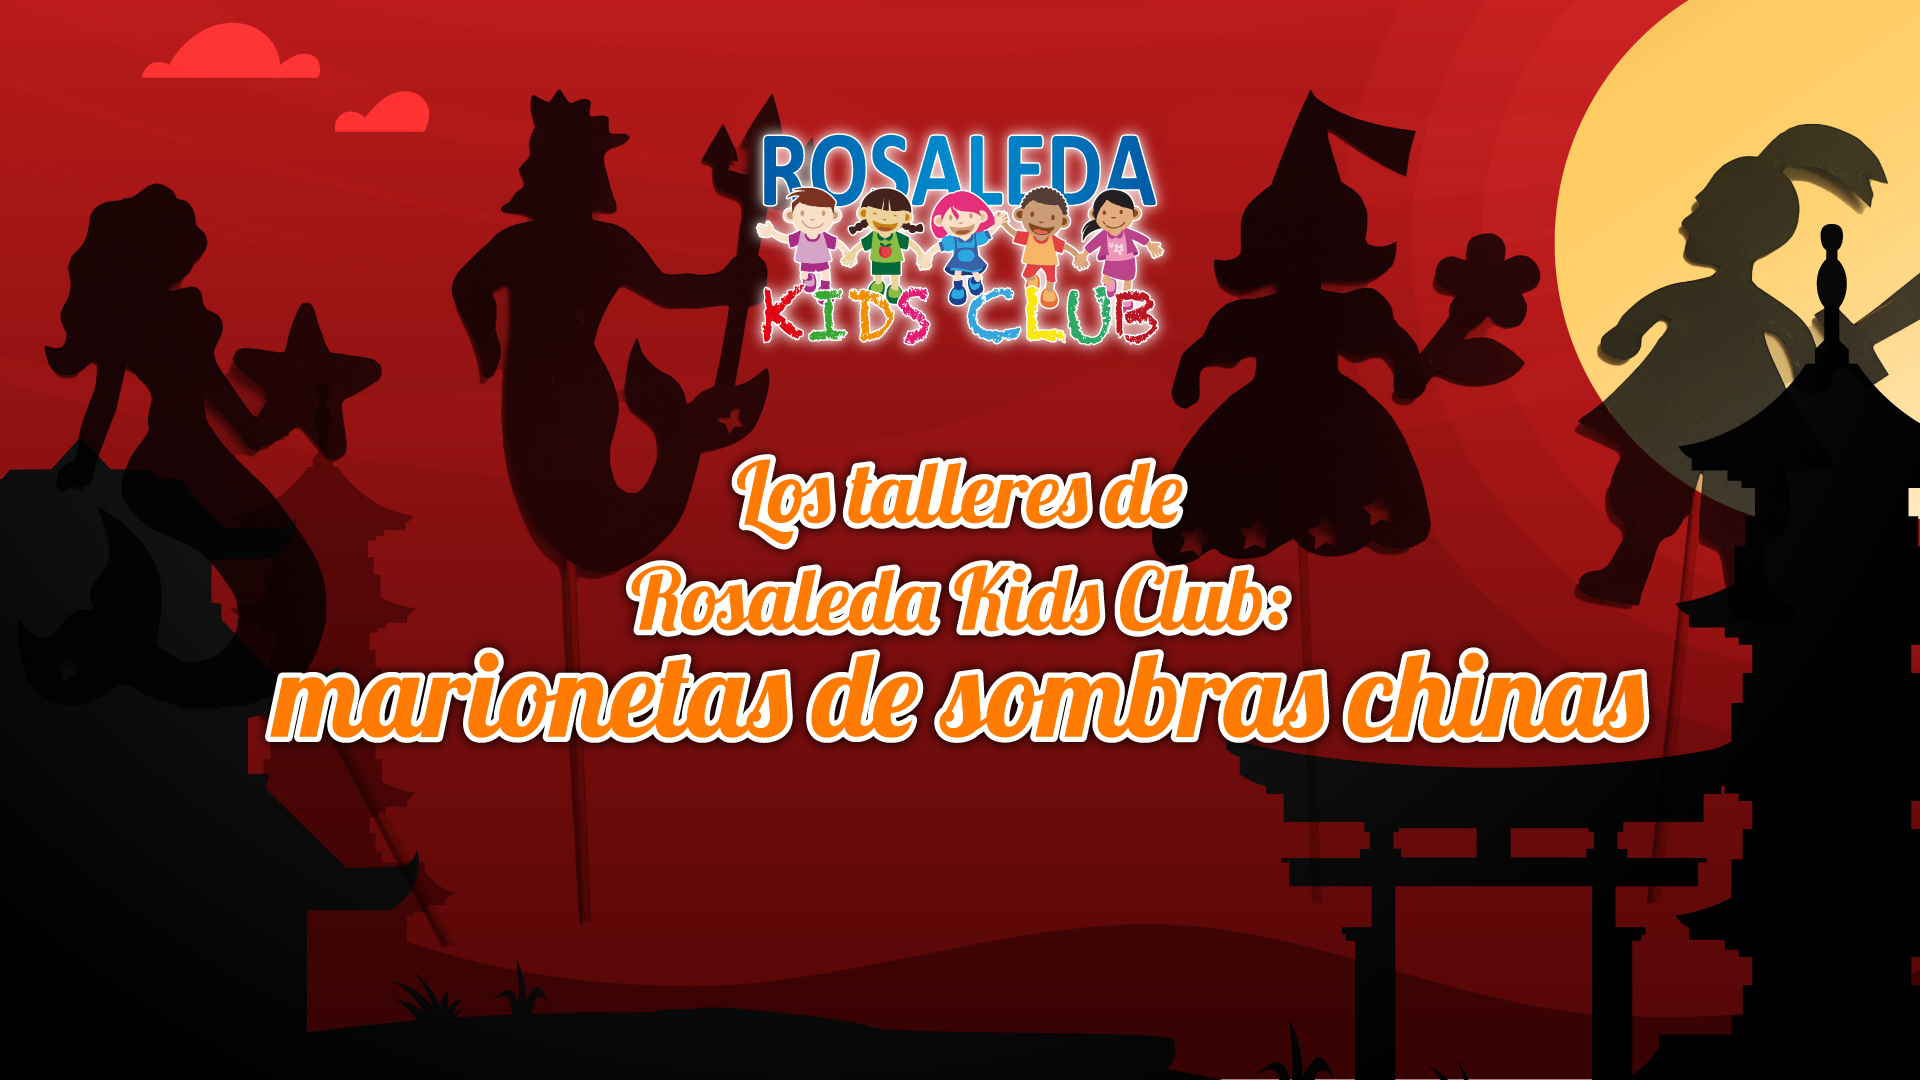 Rosaleda Kids Club: marionetas de sombras chinas